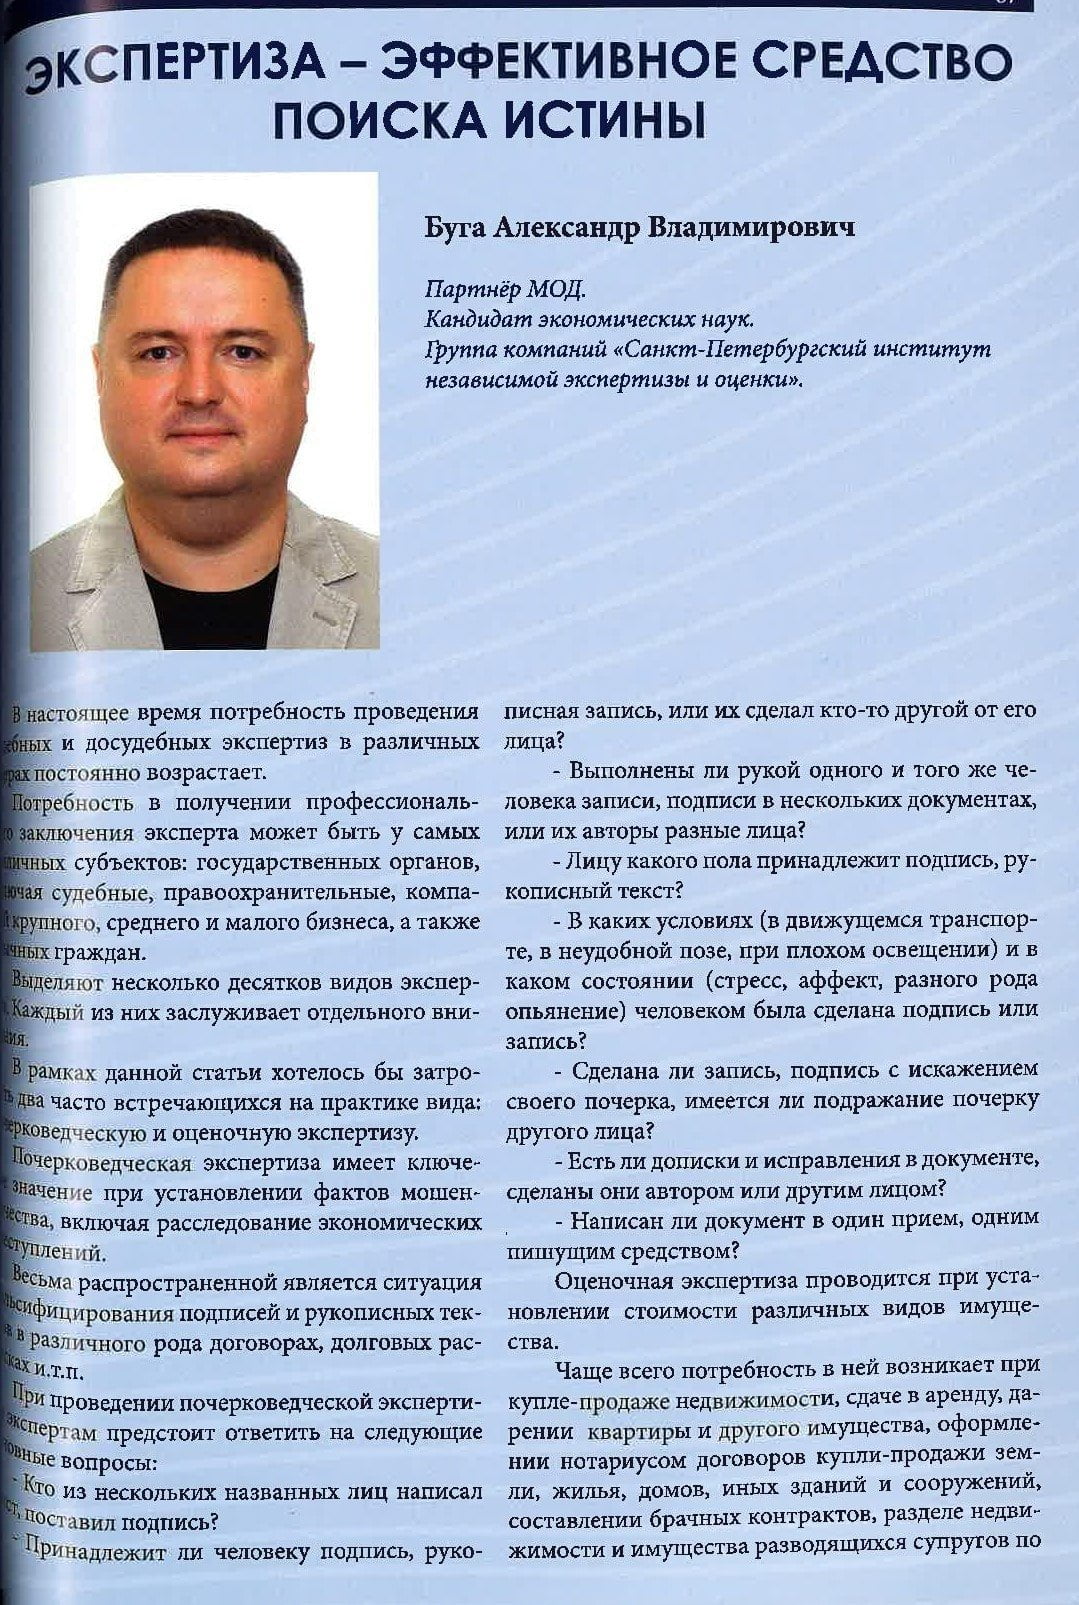 СИНЭО: Санкт-Петербургский институт независимой экспертизы и оценки активно занимается научной деятельностью.